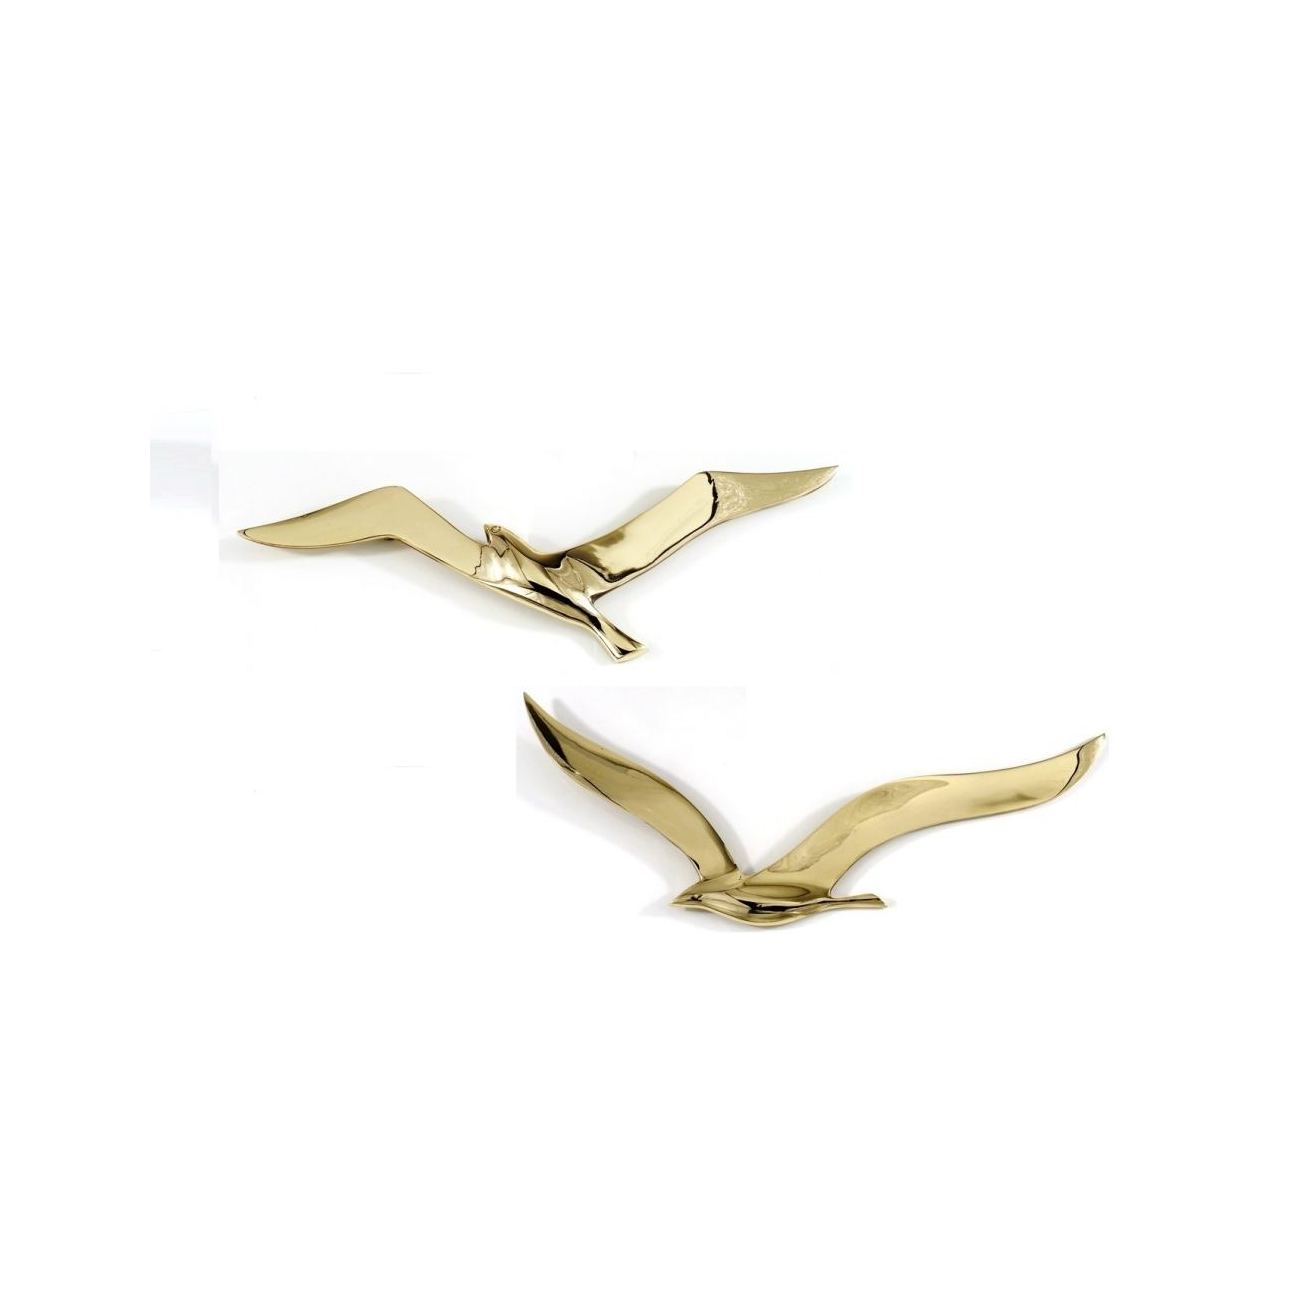 Flying Seagull Bird - Handmade Metal Wall Art Decor - Gold ...